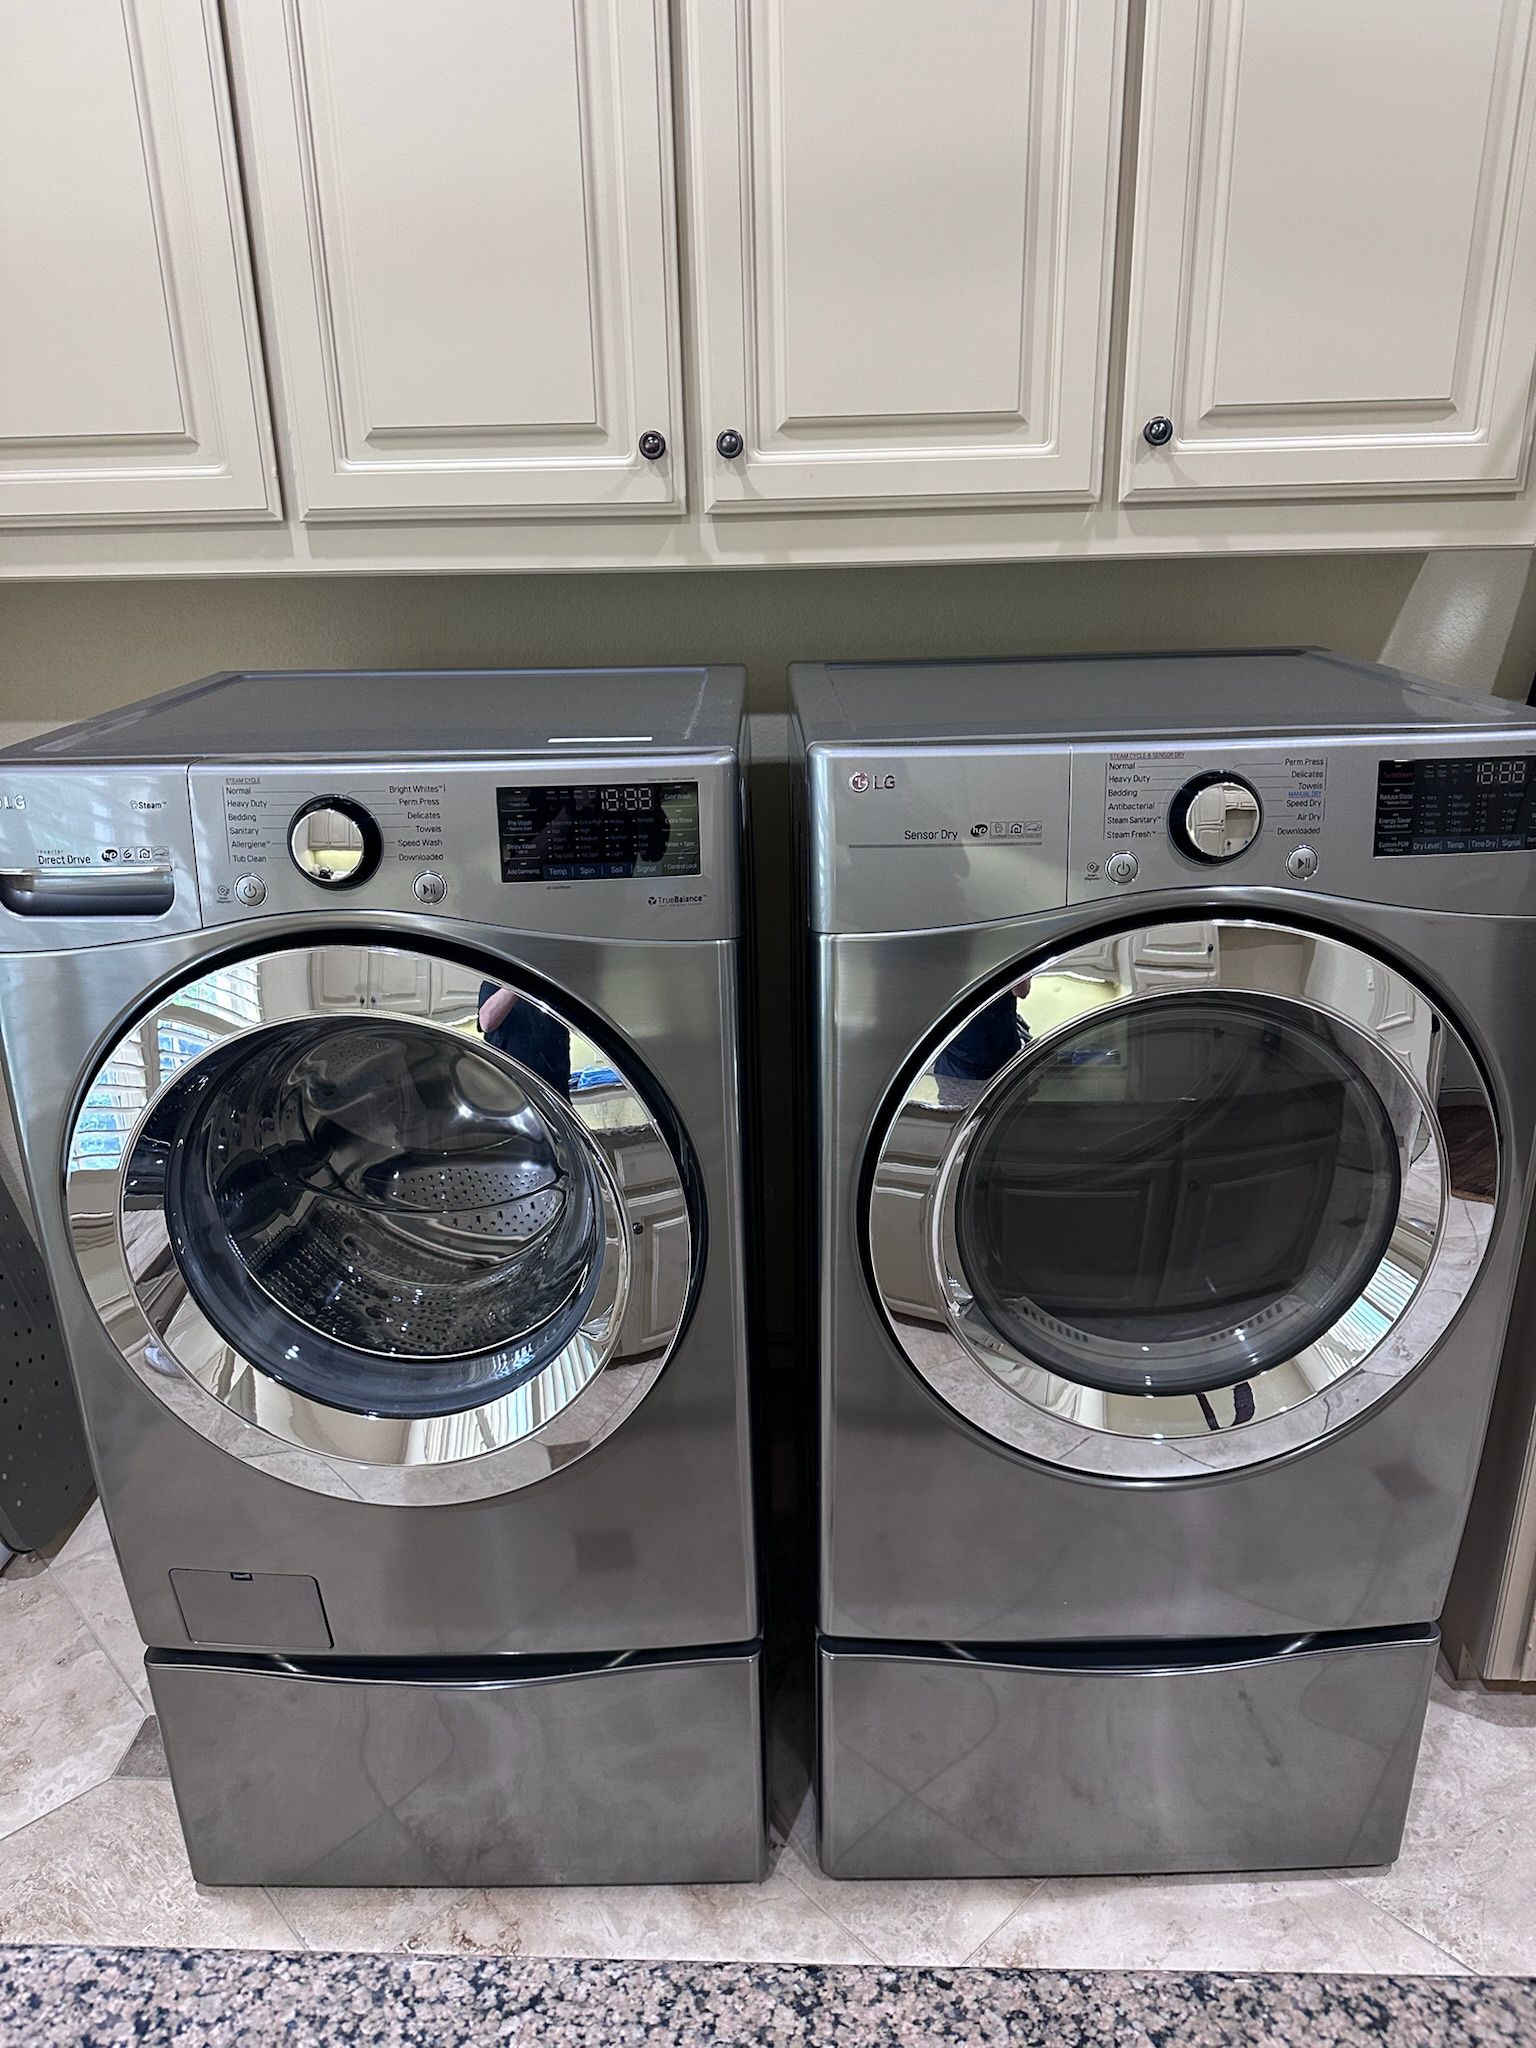 LG Front Loading Washer & Dryer 2018 Model